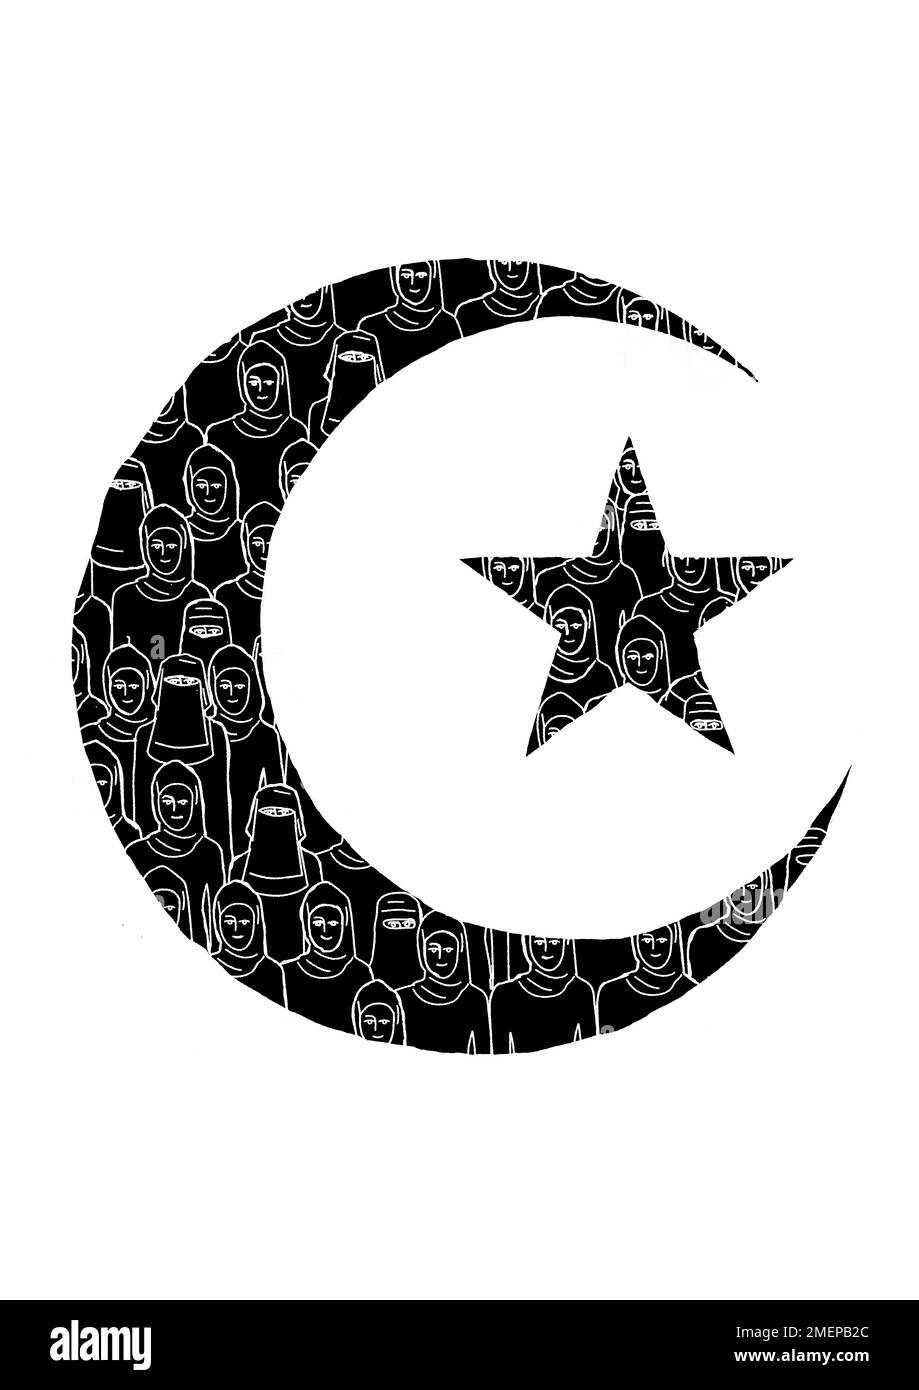 Islam-Stern und Mond mit muslimischen Frauen darin. Stockfoto